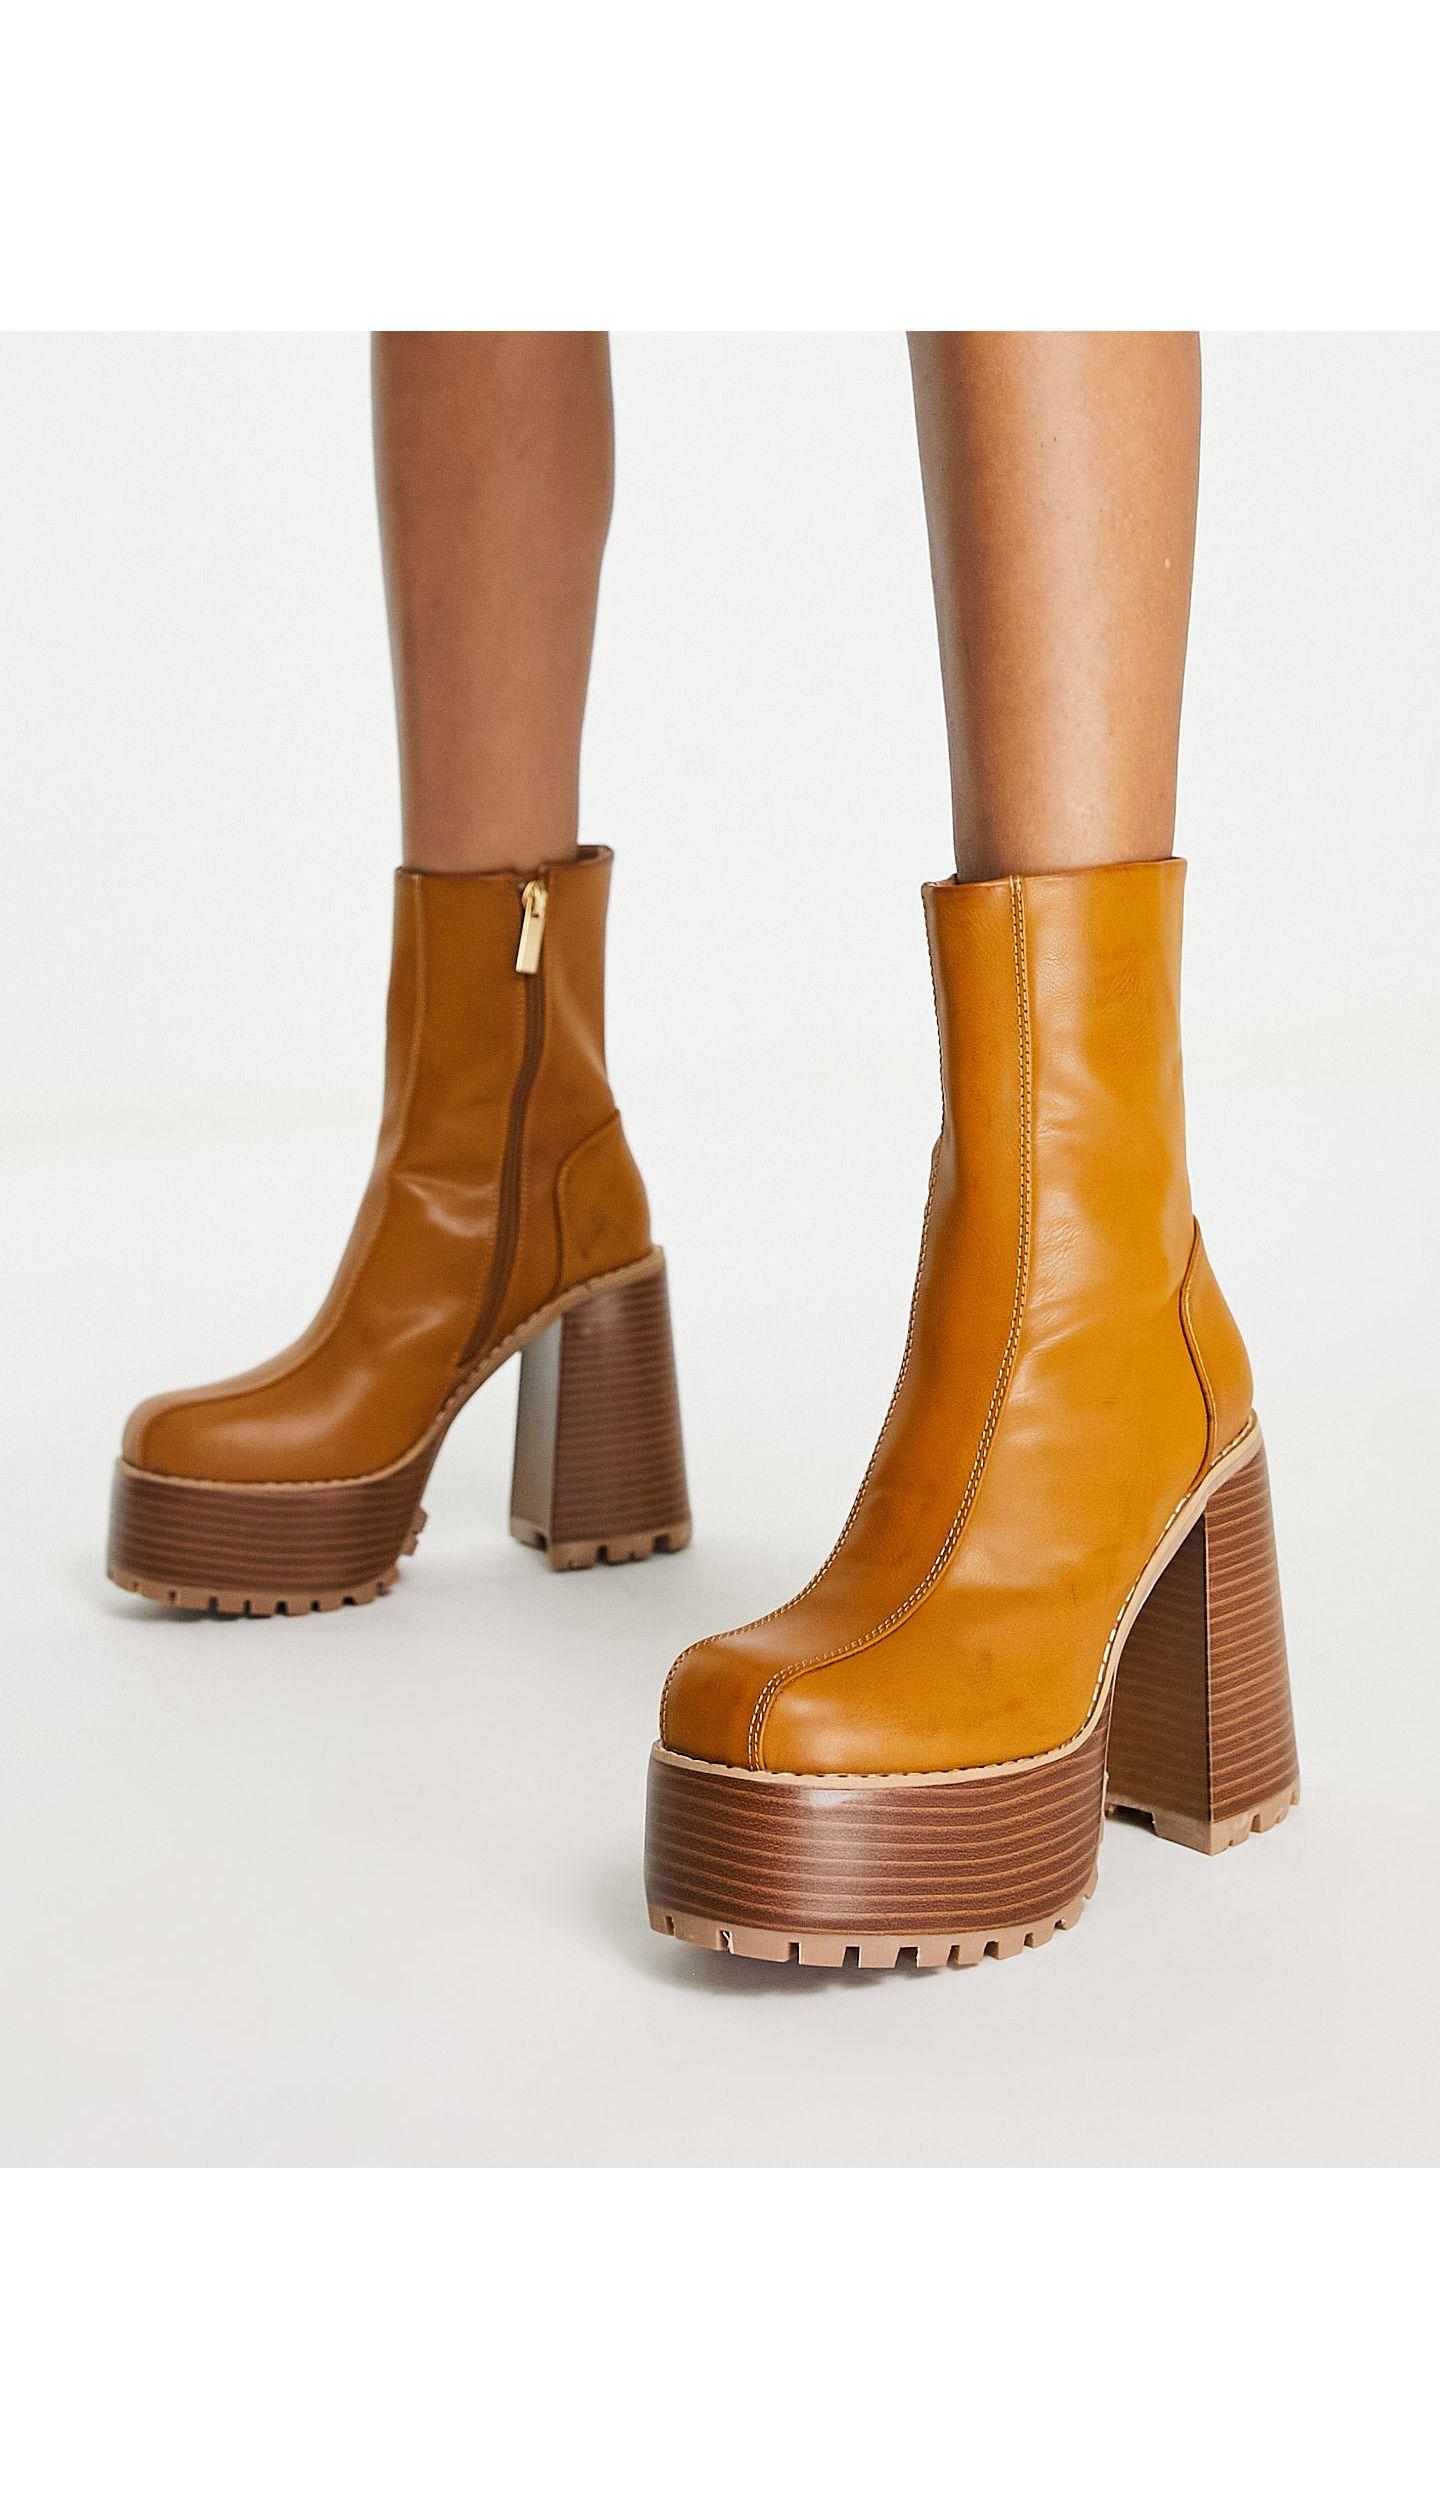 ASOS Emotive High-heeled Platform Ankle Boots in Brown | Lyst UK